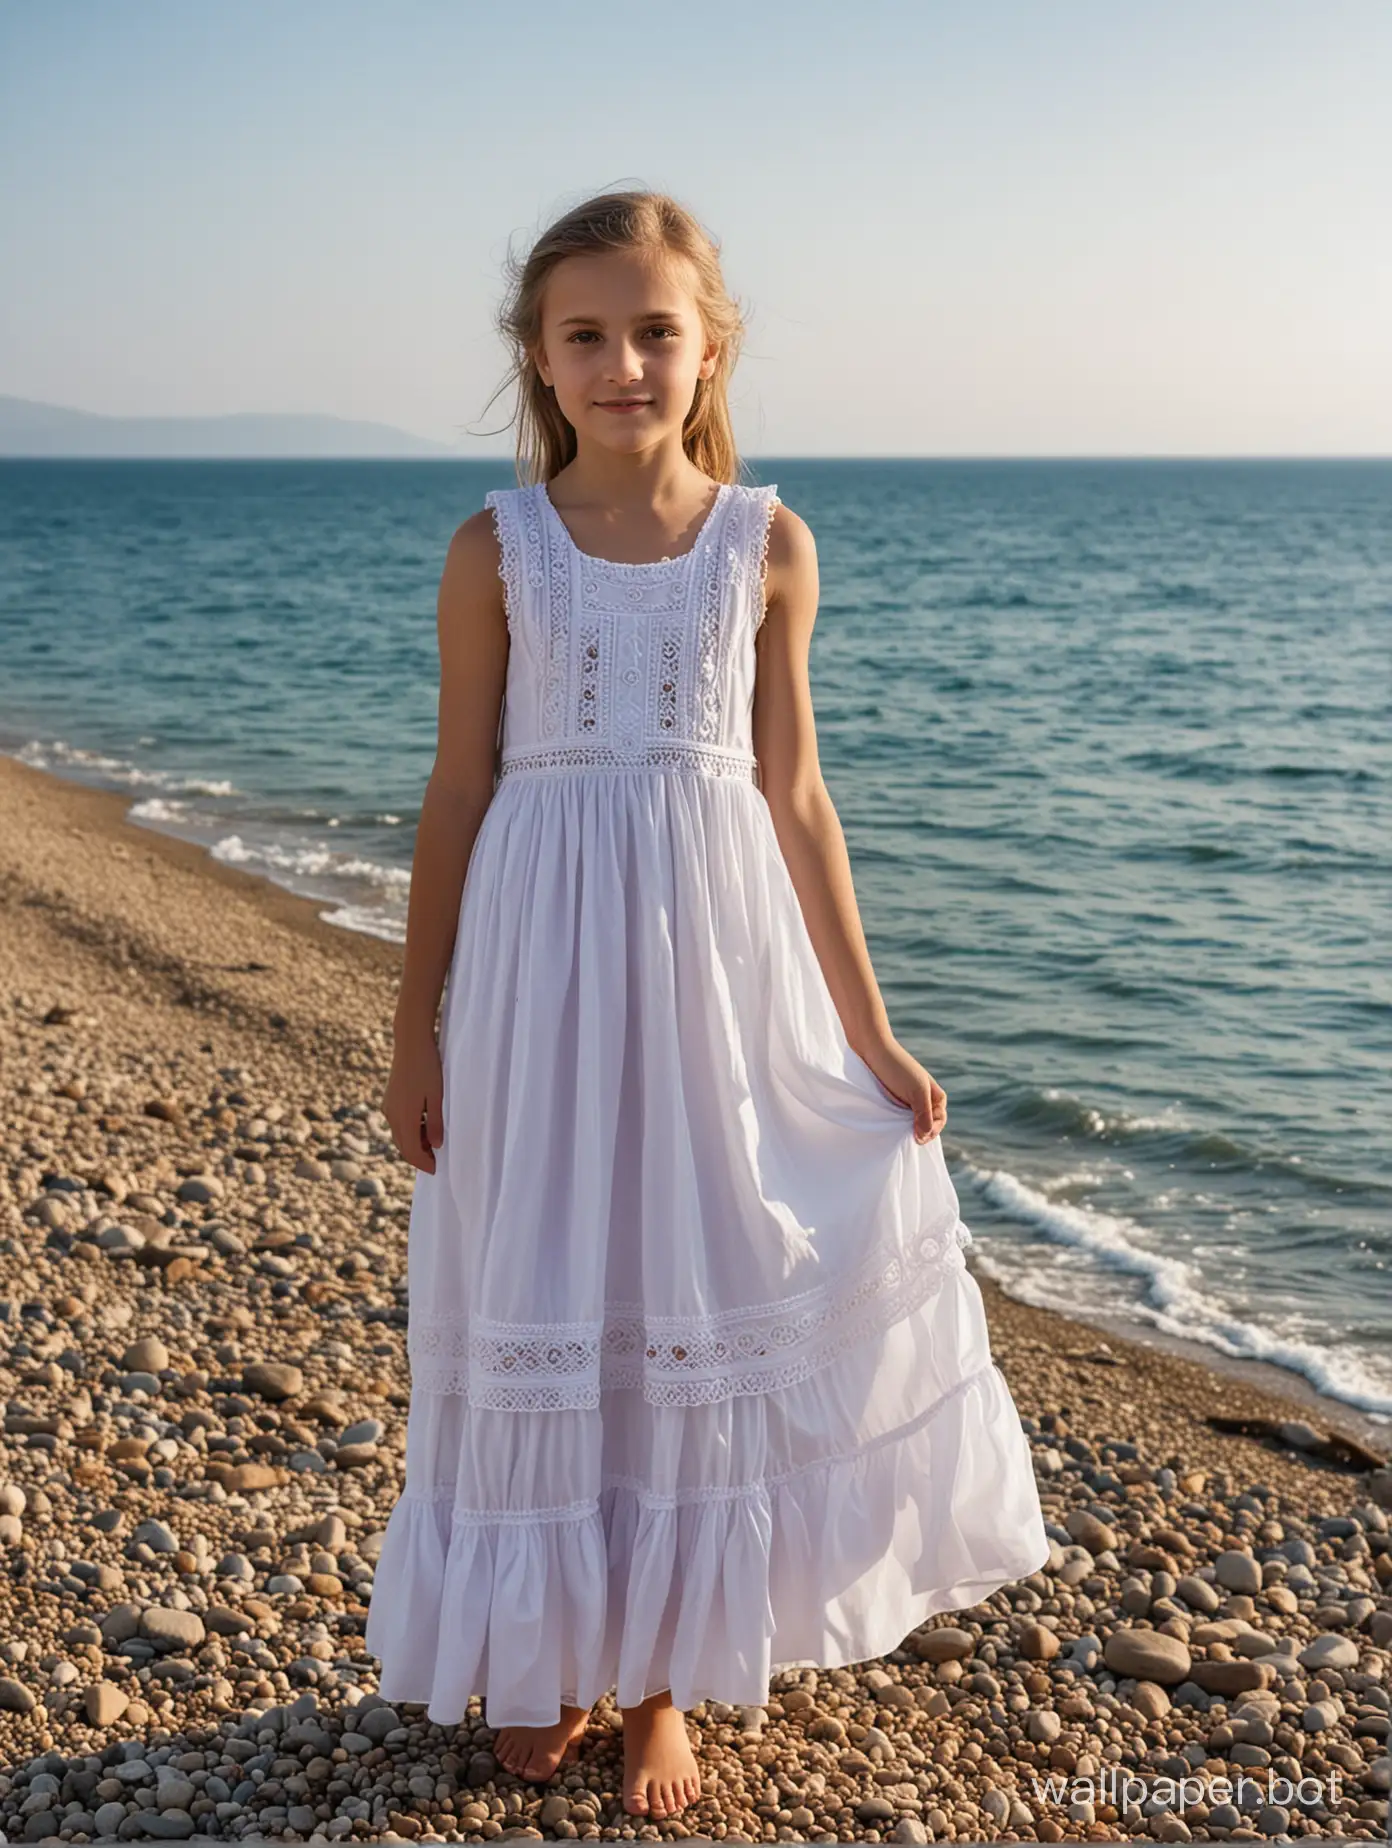 Crimea, seaside, 10-year-old girl in a dress, posing, full-length